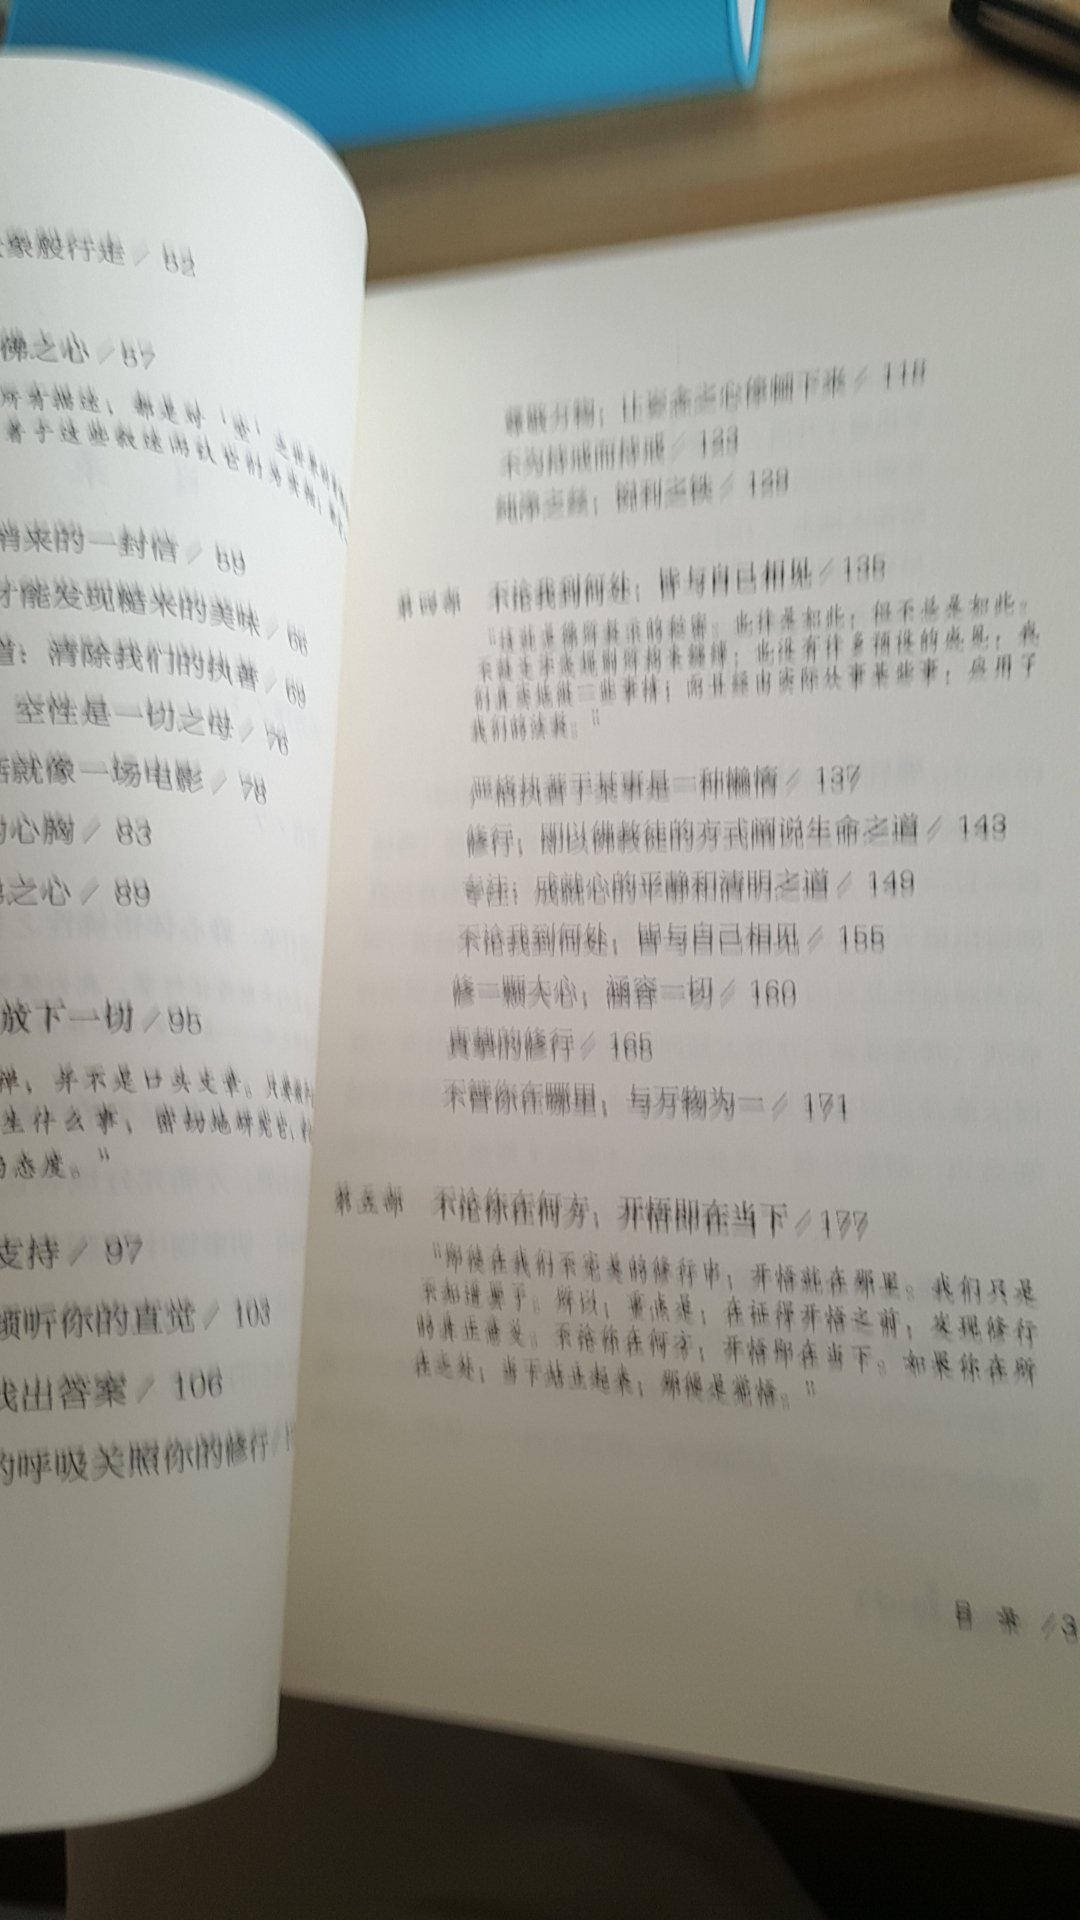 买过禅者的初心第一册，这次买了第二册，感受得到日本僧人那种独特的安静和淡泊。印刷精美，文字通俗易懂，很不错很不错